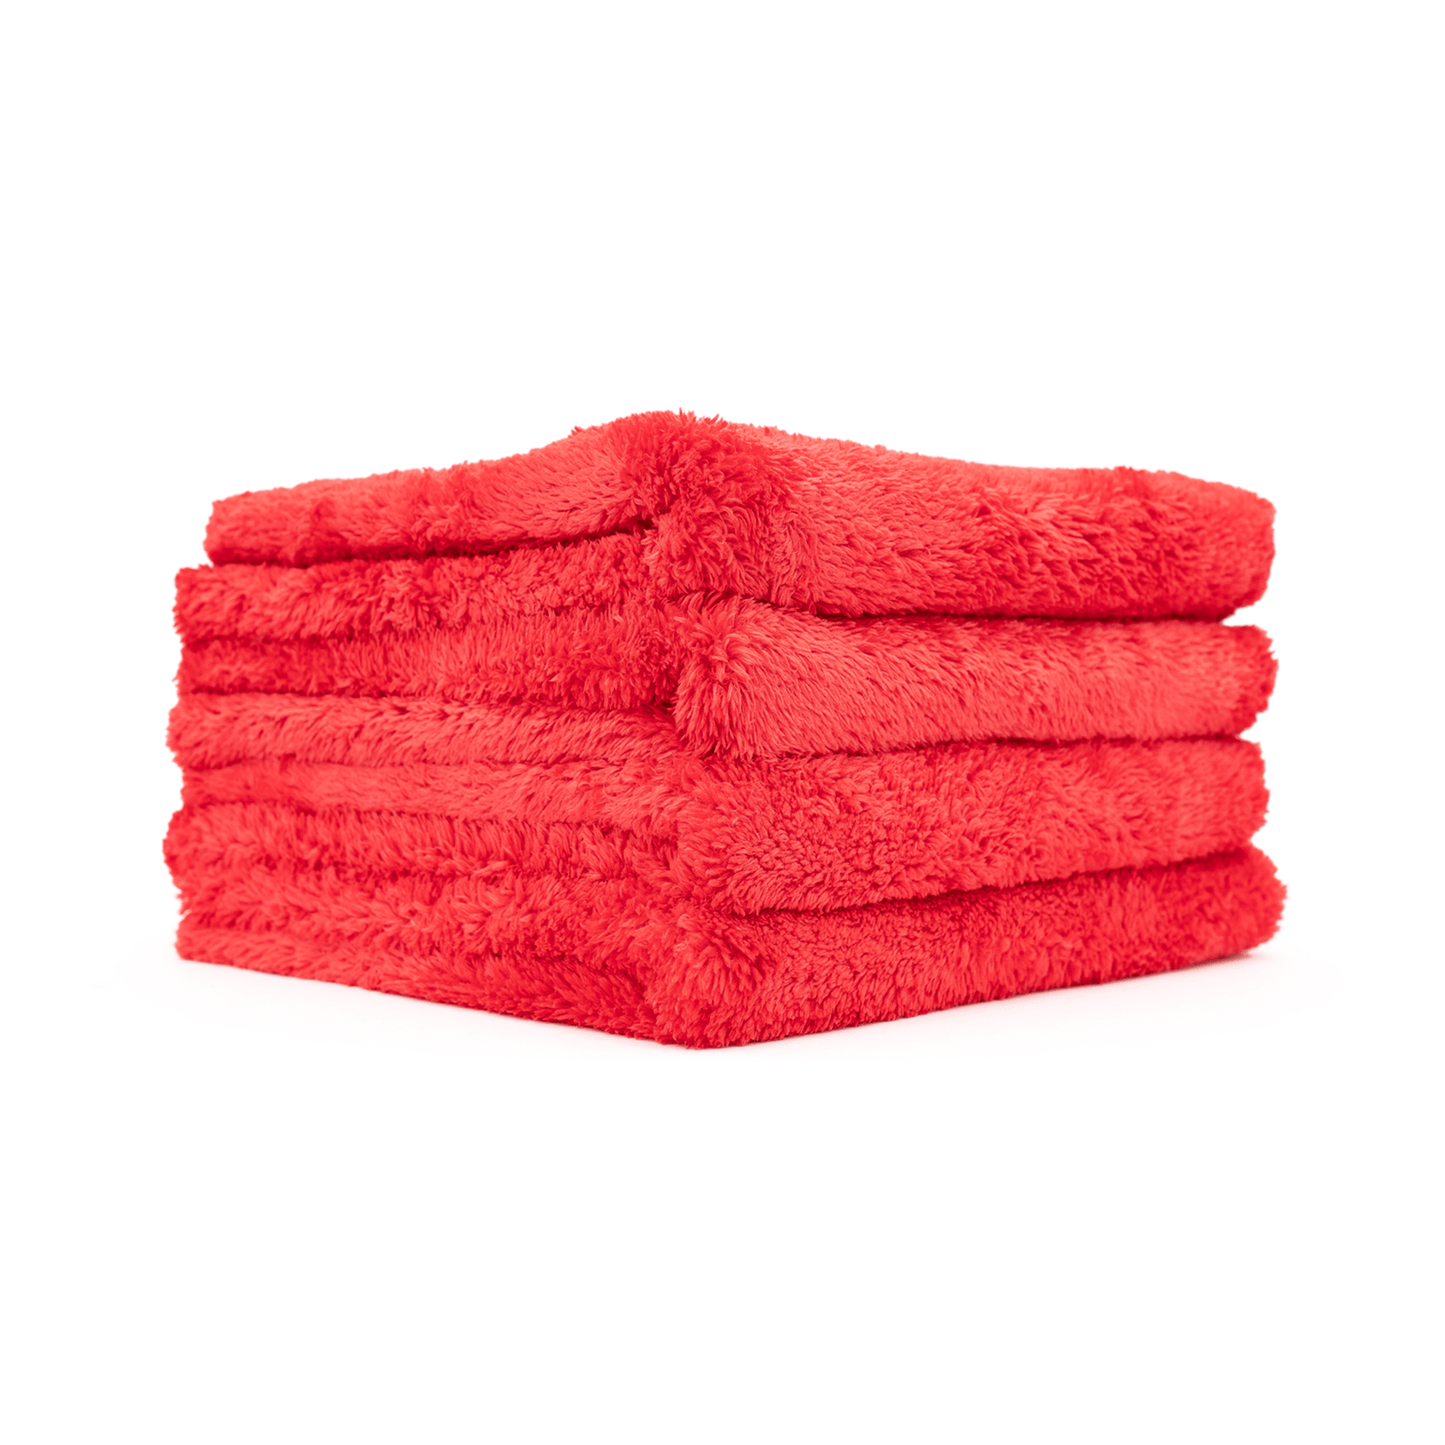 Microfiber Towel Red